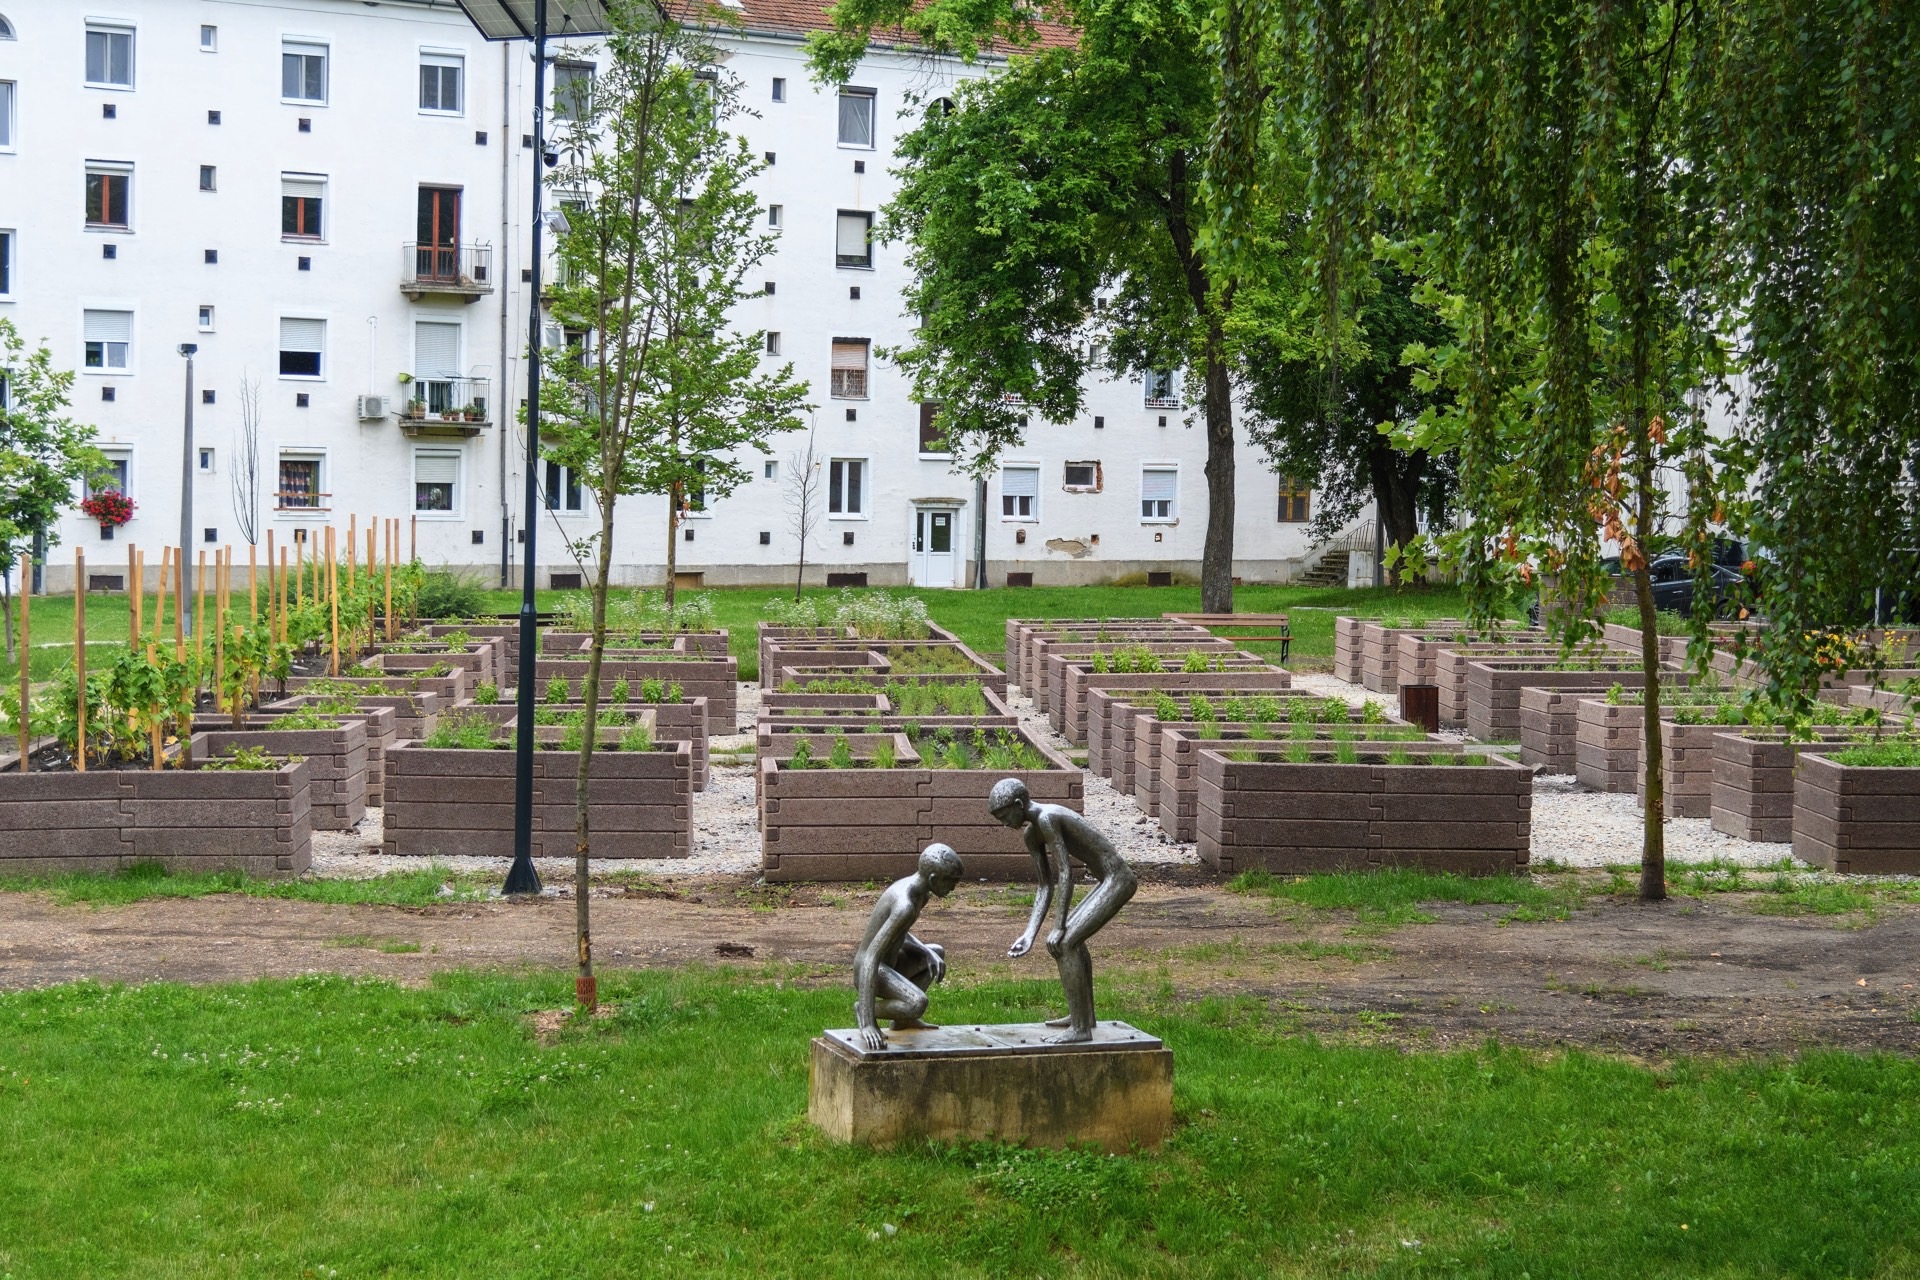 https://kolorline.hu/Kertészkedés és közösségépítés: elkészültek az első közösségi kertek Kazincbarcikán